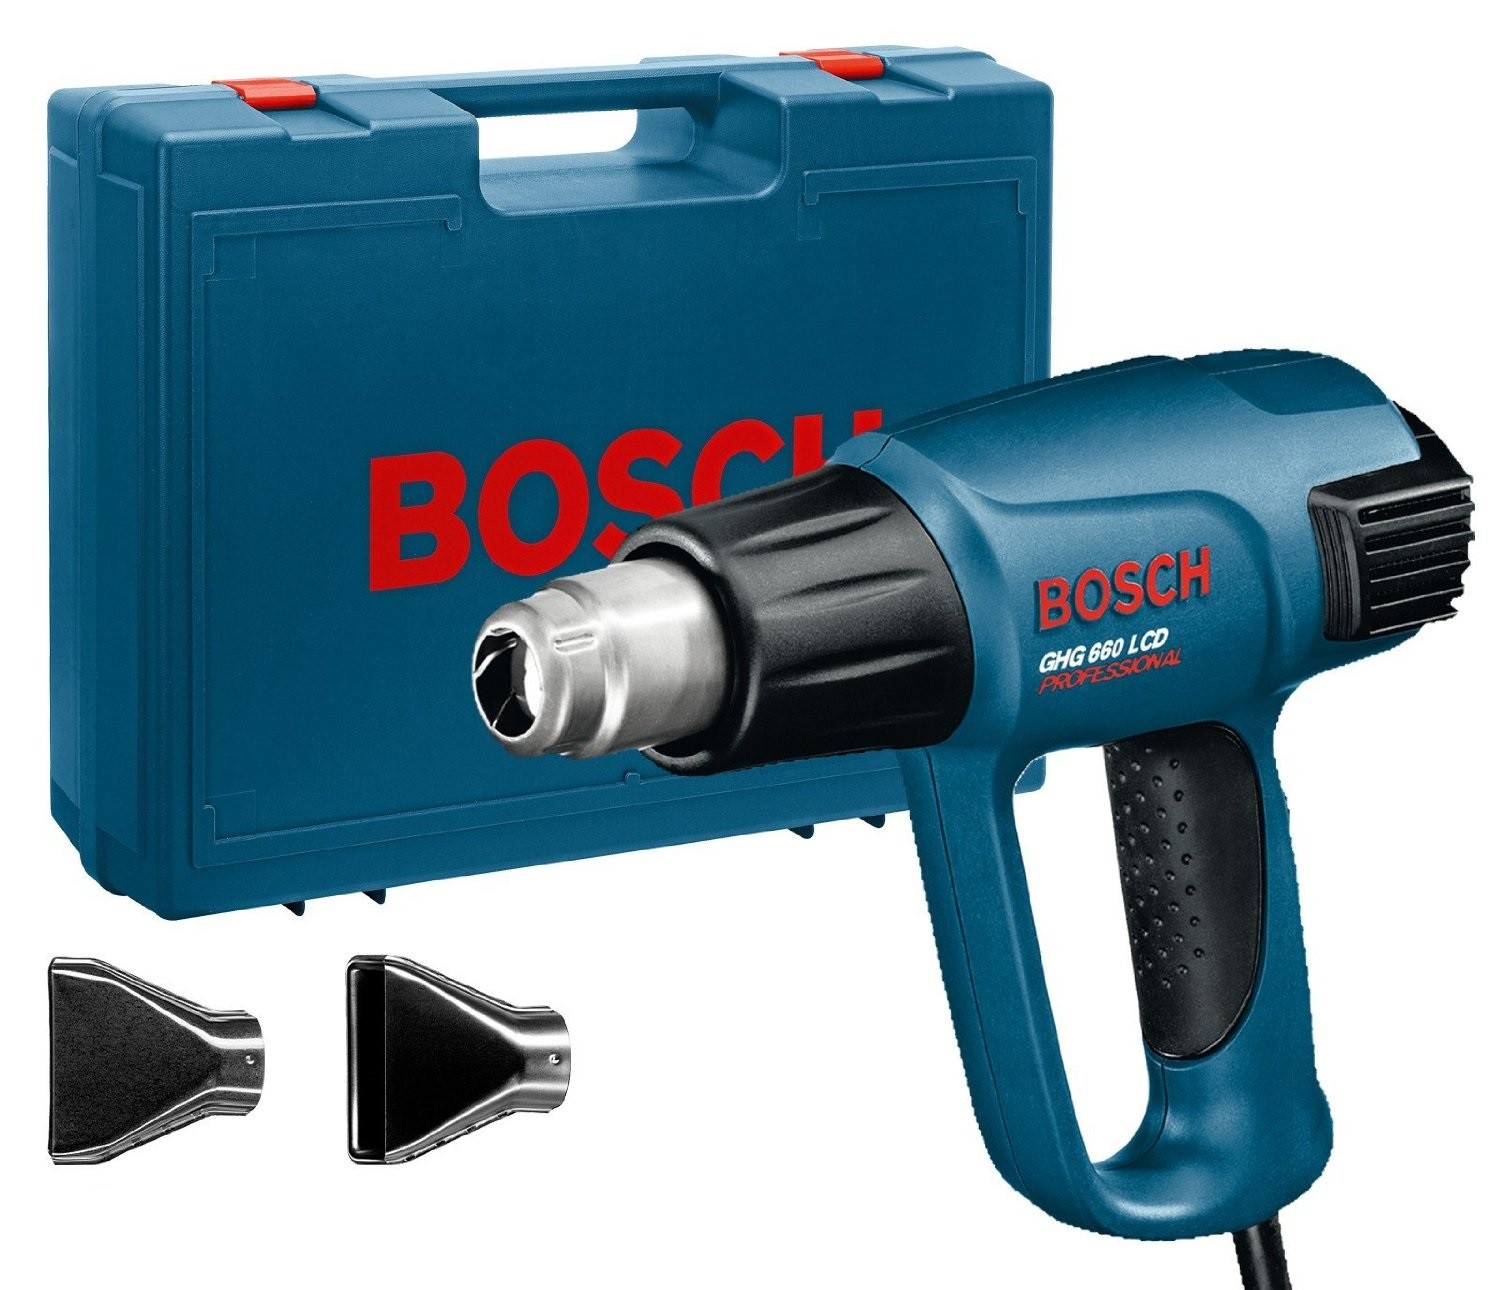 Bosch teplovzdušná pištoľ GHG660LCD + príslušenstvo